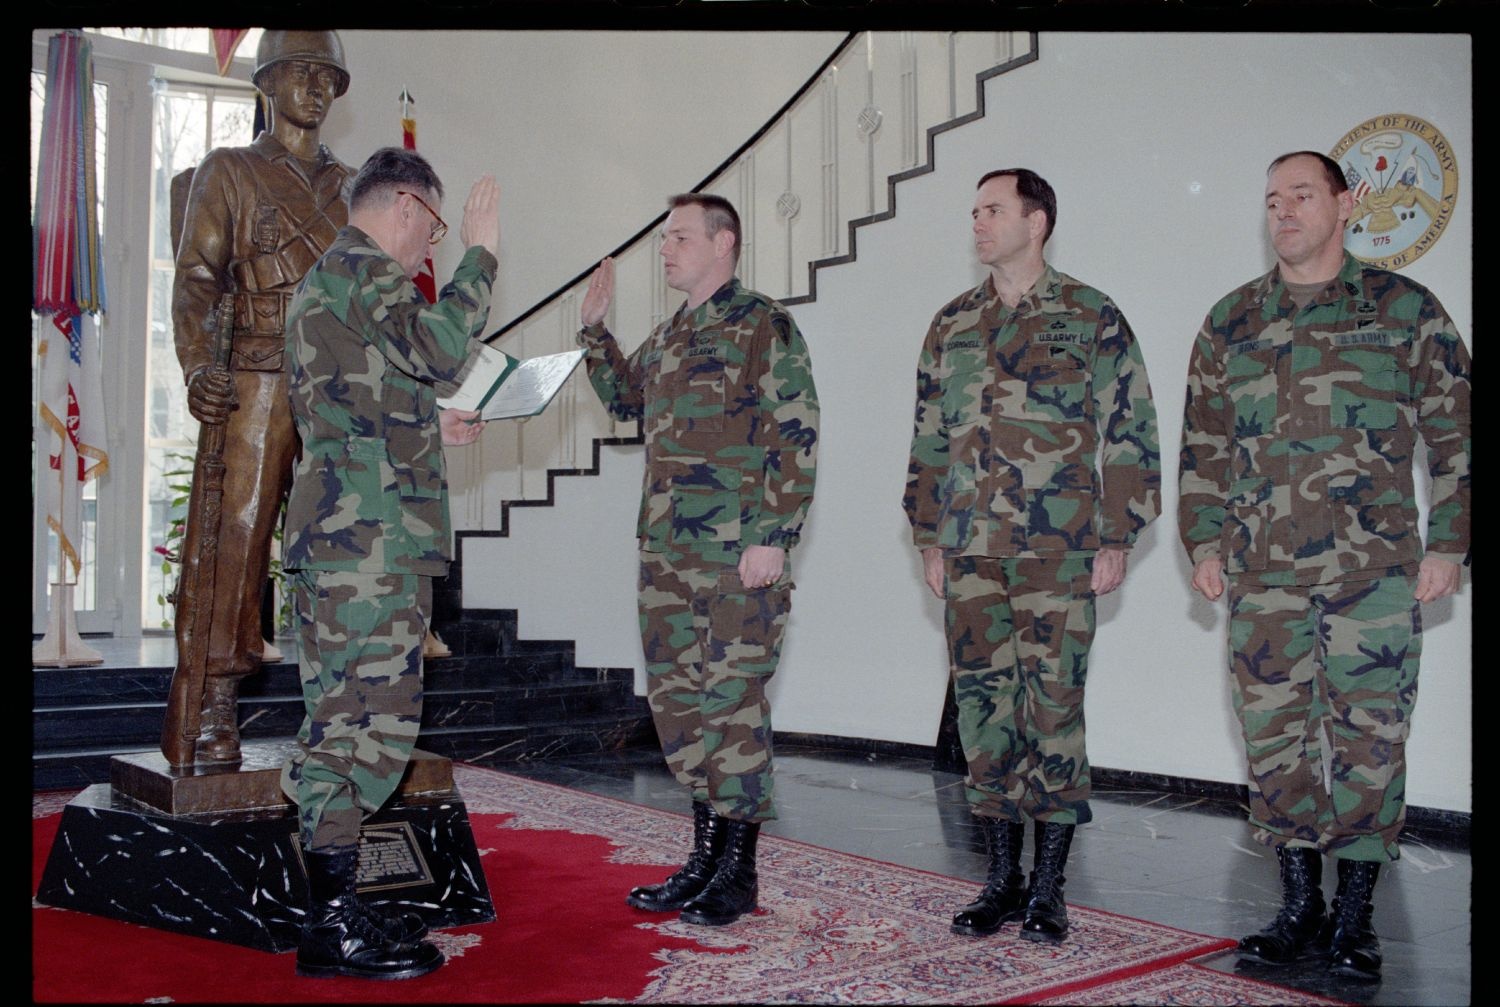 Fotografie: Wiederverpflichtung von Soldaten der U.S. Army Berlin im US-Hauptquartier in Berlin-Dahlem (AlliiertenMuseum/U.S. Army Photograph Public Domain Mark)